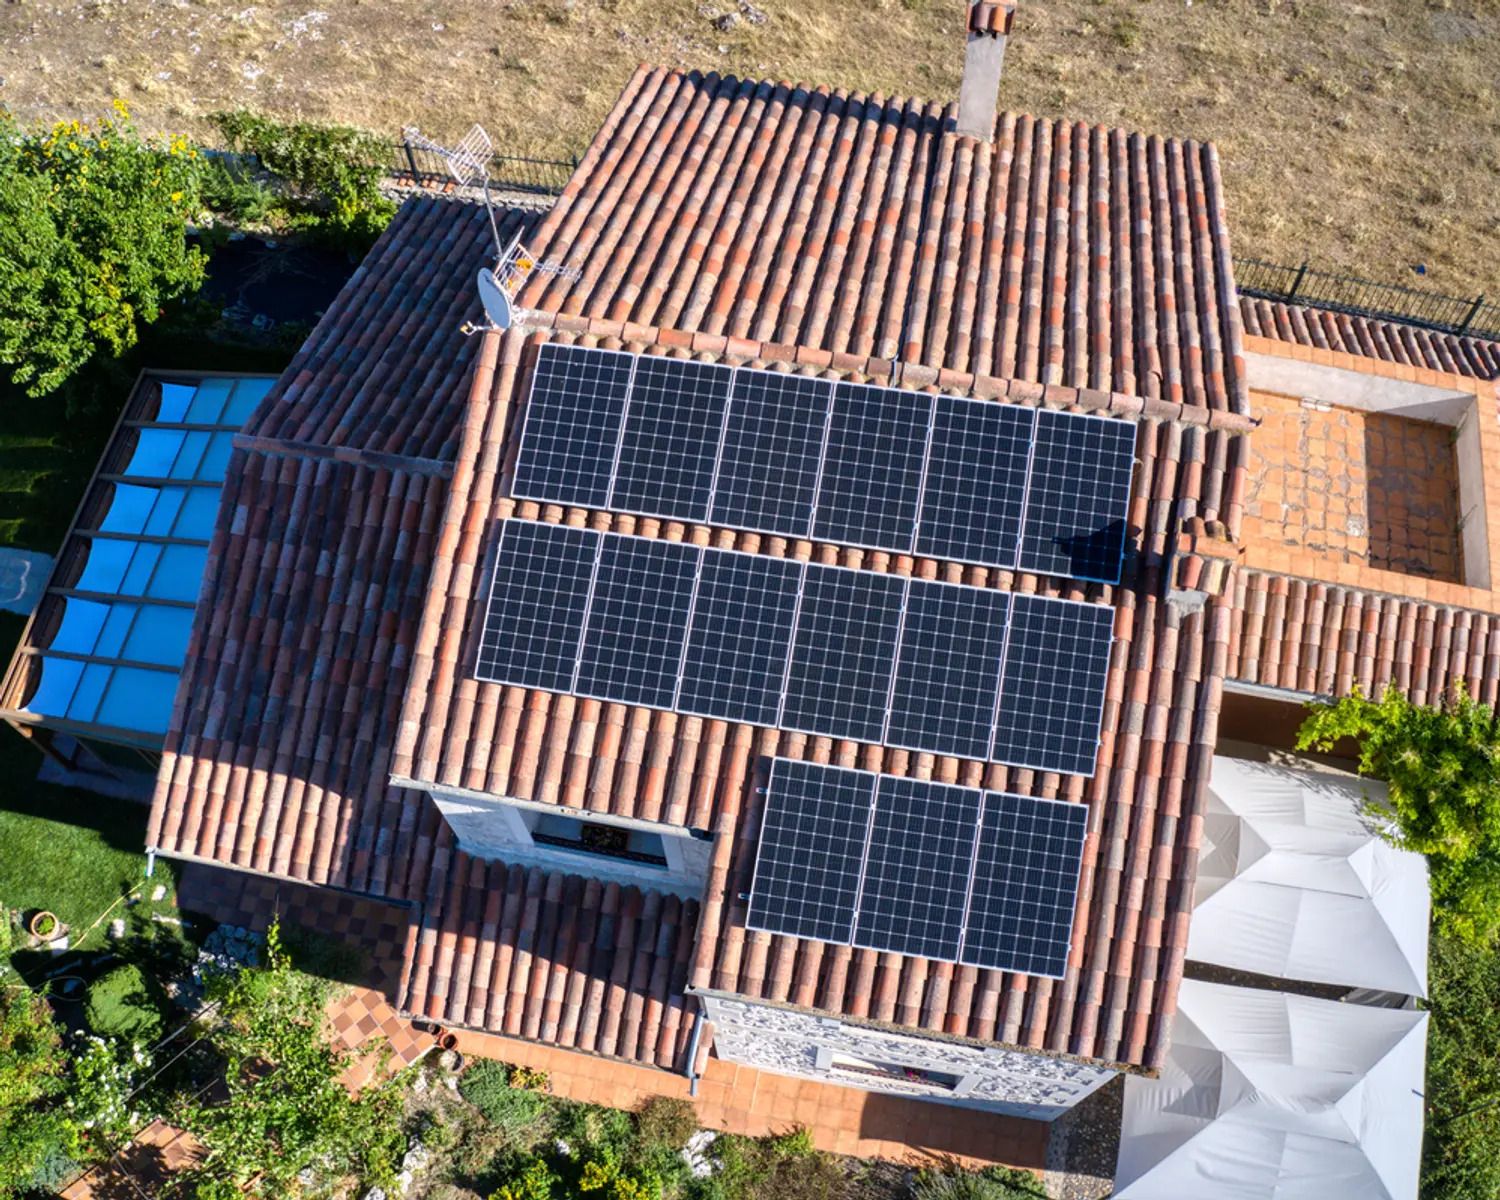 Casa com múltiplos painéis solares em Portugal